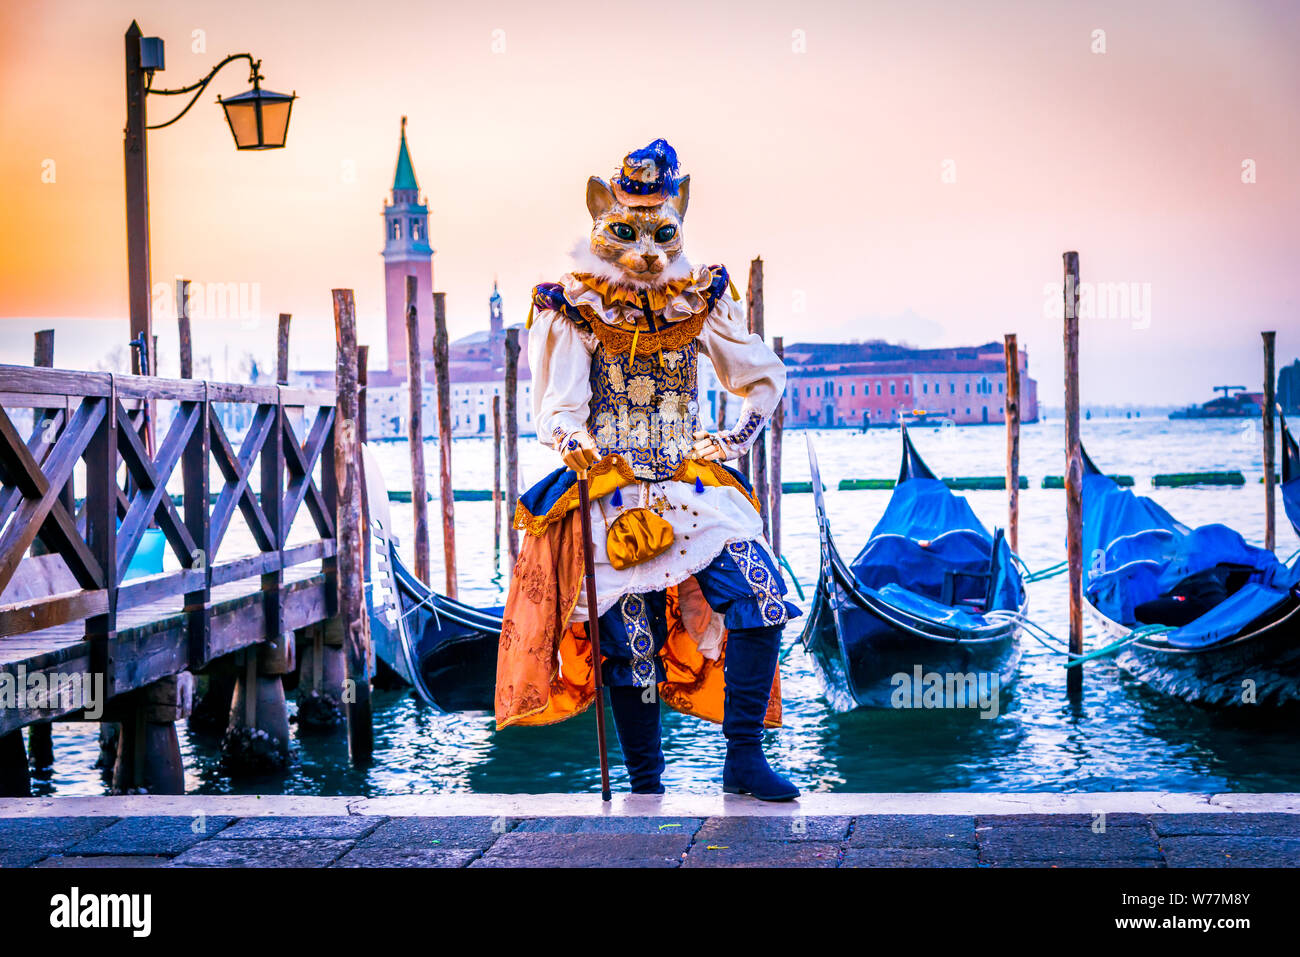 Karneval in Venedig, wunderschöne Maske an der Piazza San Marco mit Gondeln und Grand Canal, Venezia, Italien. Stockfoto